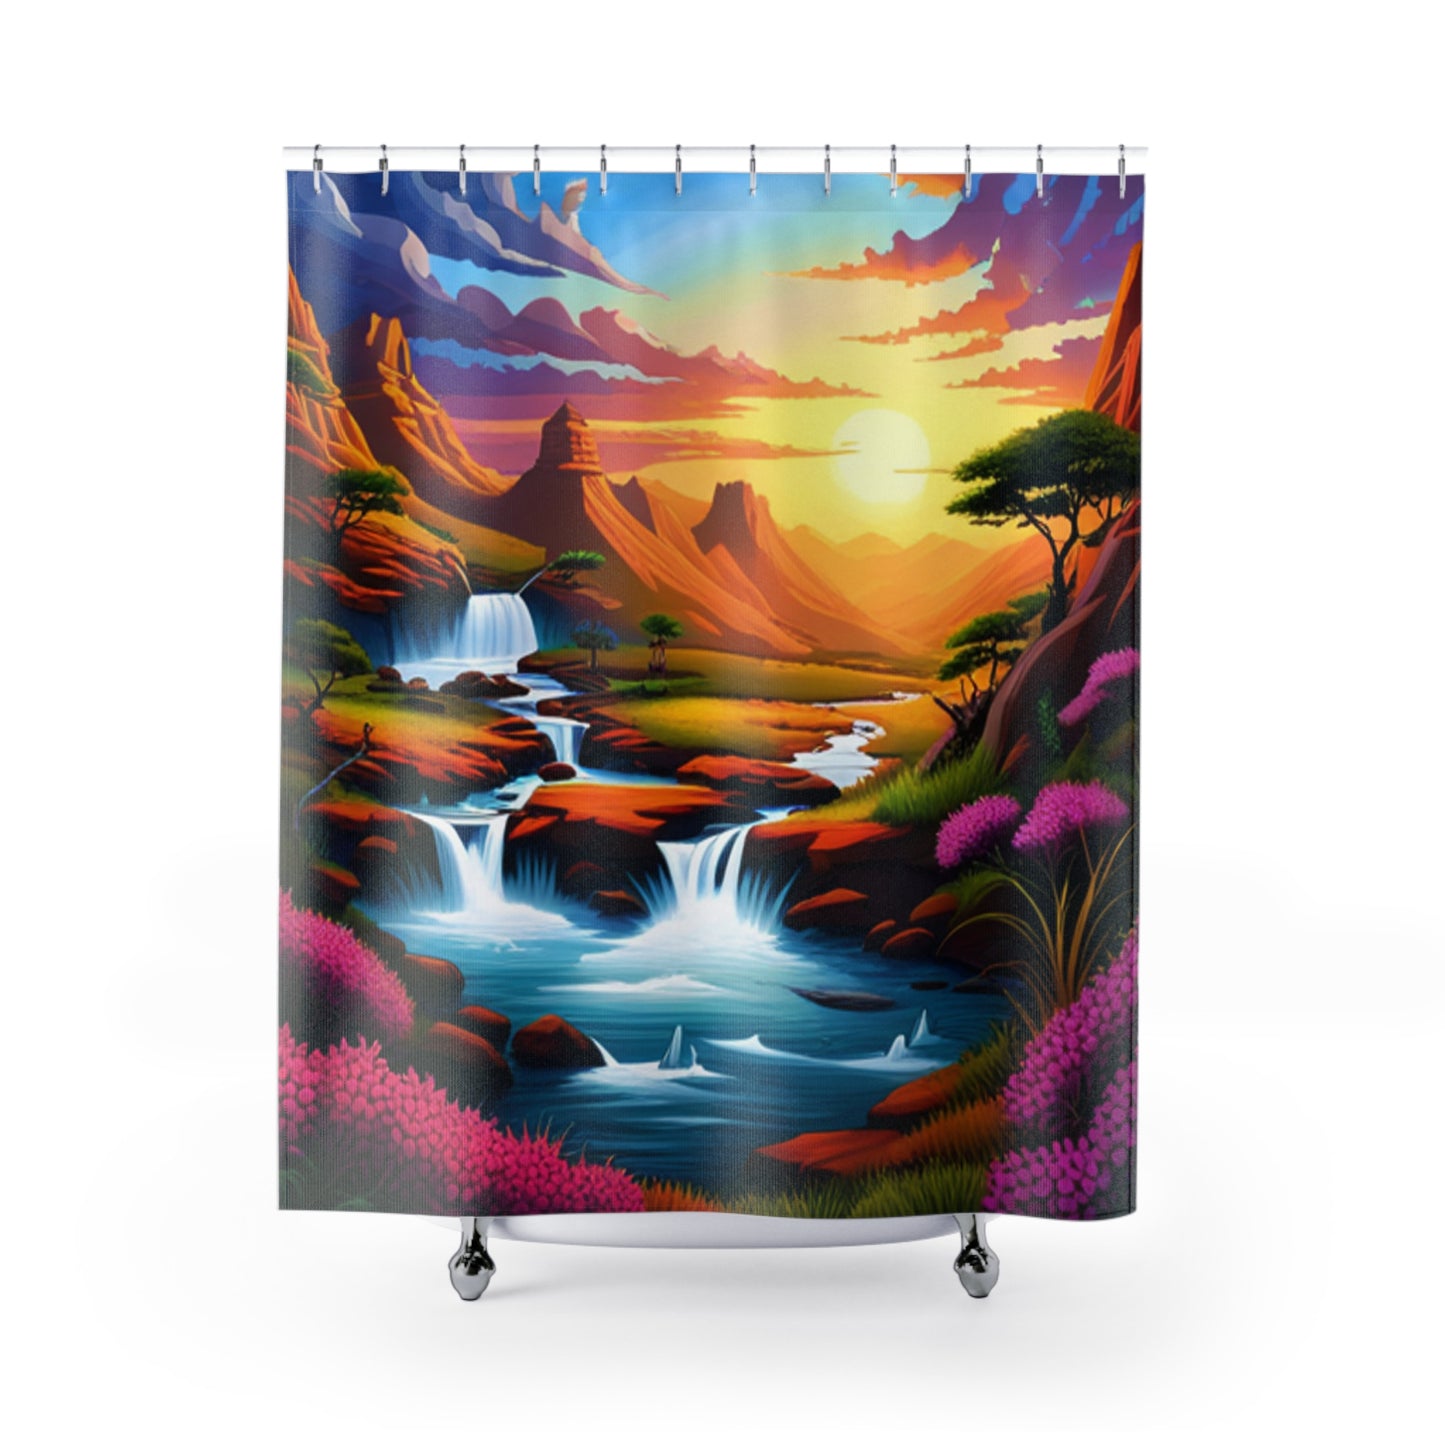 R_RH Vivid Landscape Shower Curtains